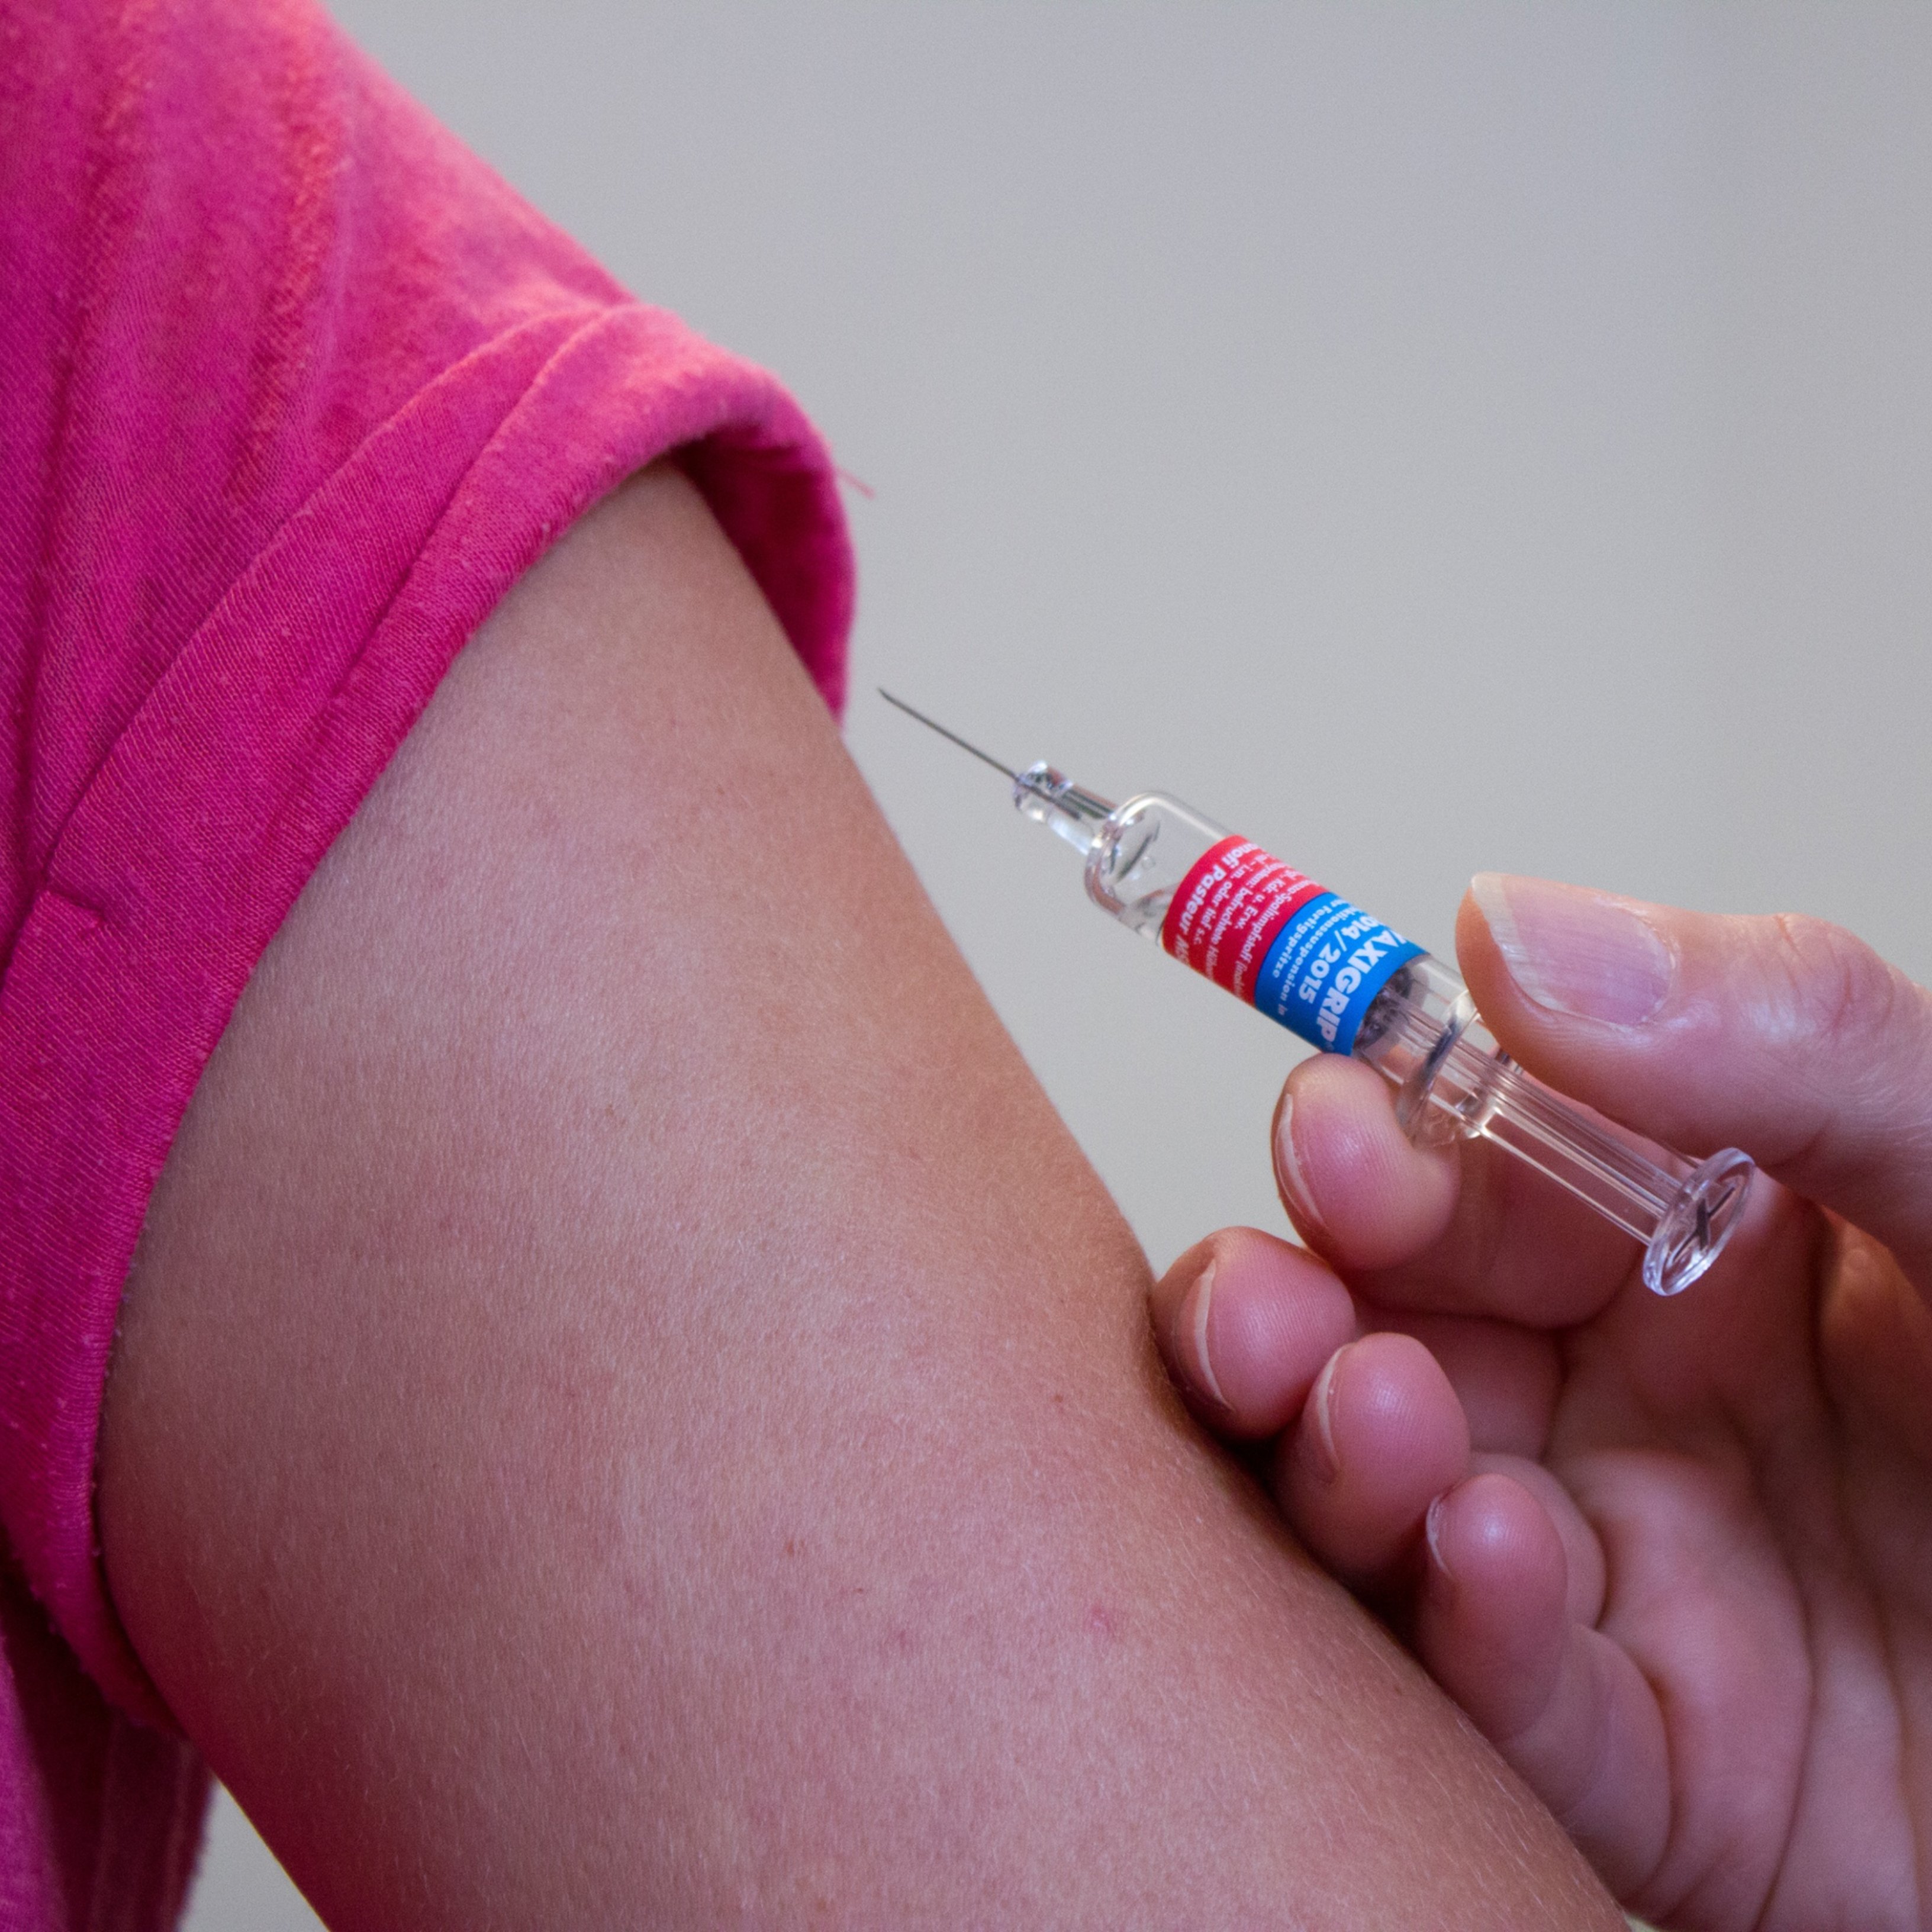 La vacuna americana de Moderna entra en fase 3: se testará en 30.000 personas